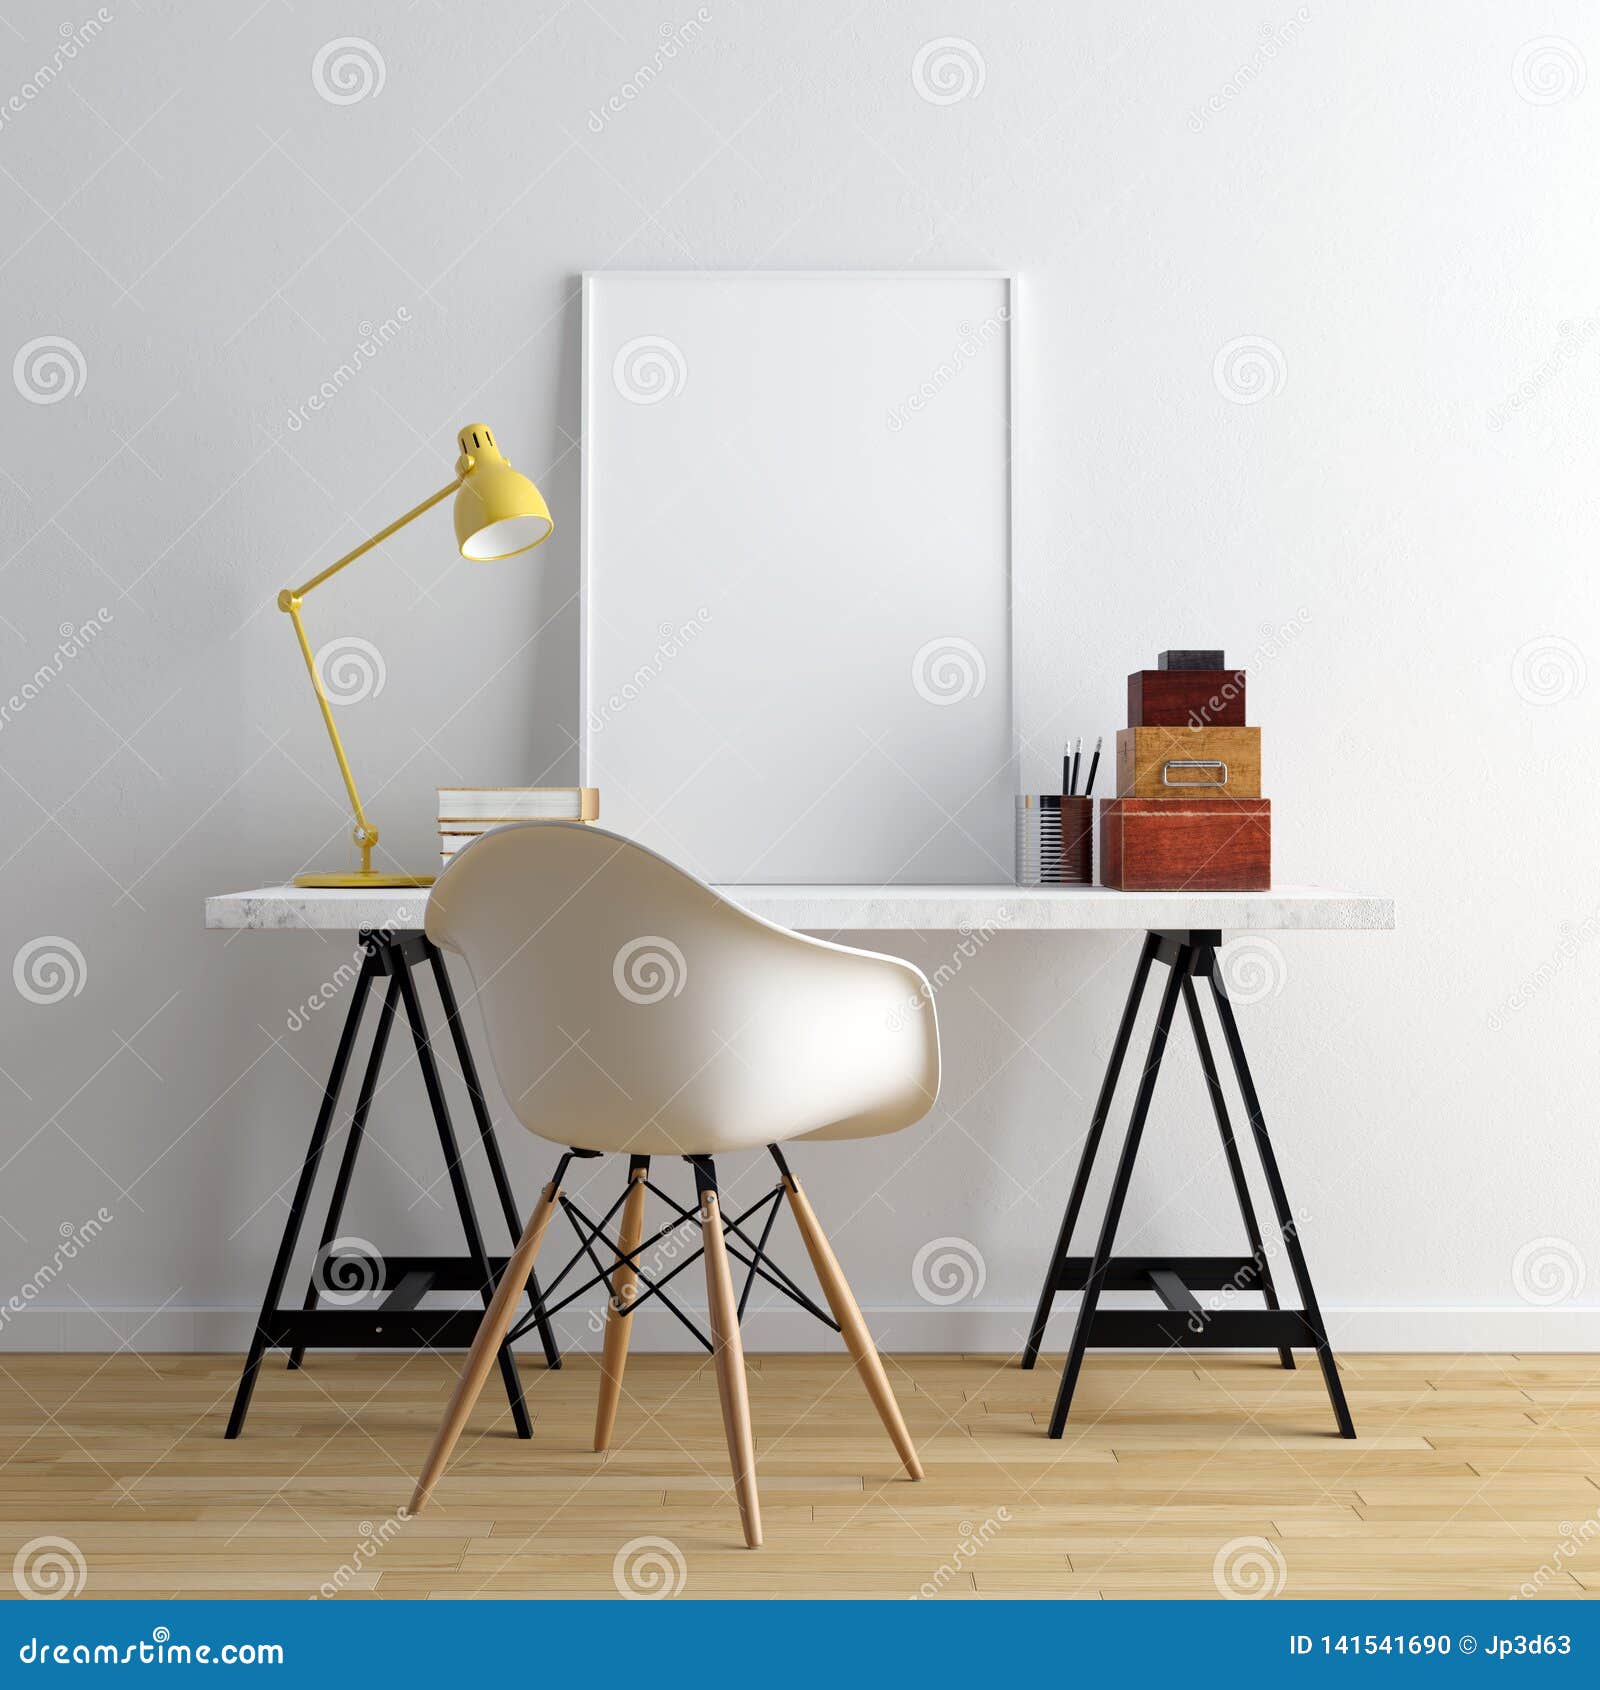 mock up poster frame with decoration - 3d render, 3d 